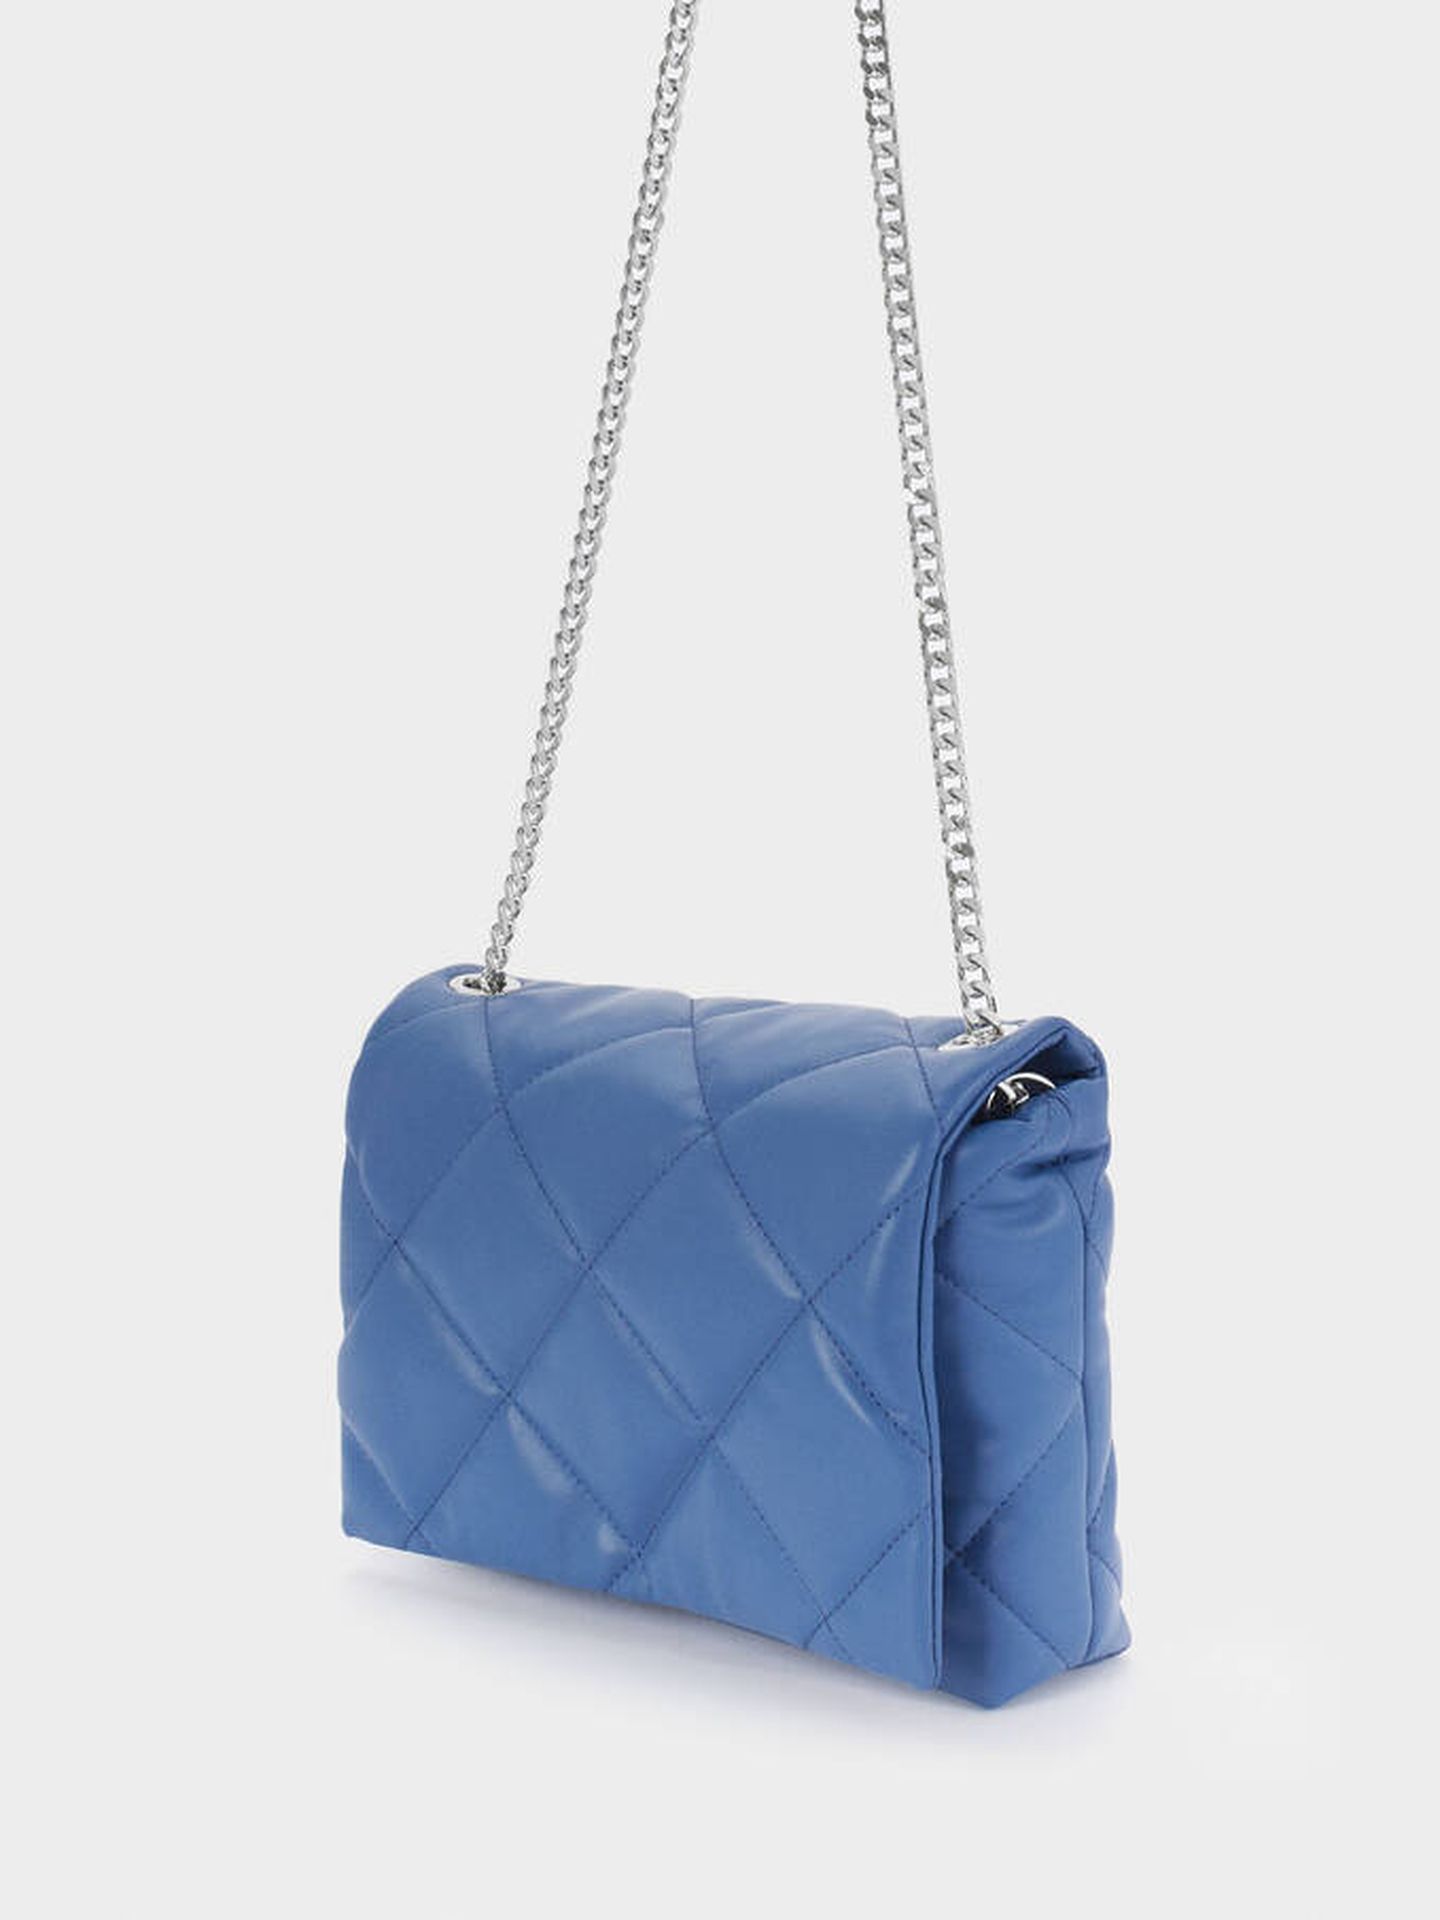 Un bolso azul como el Parfois puede revolucionar tu armario en clave low cost